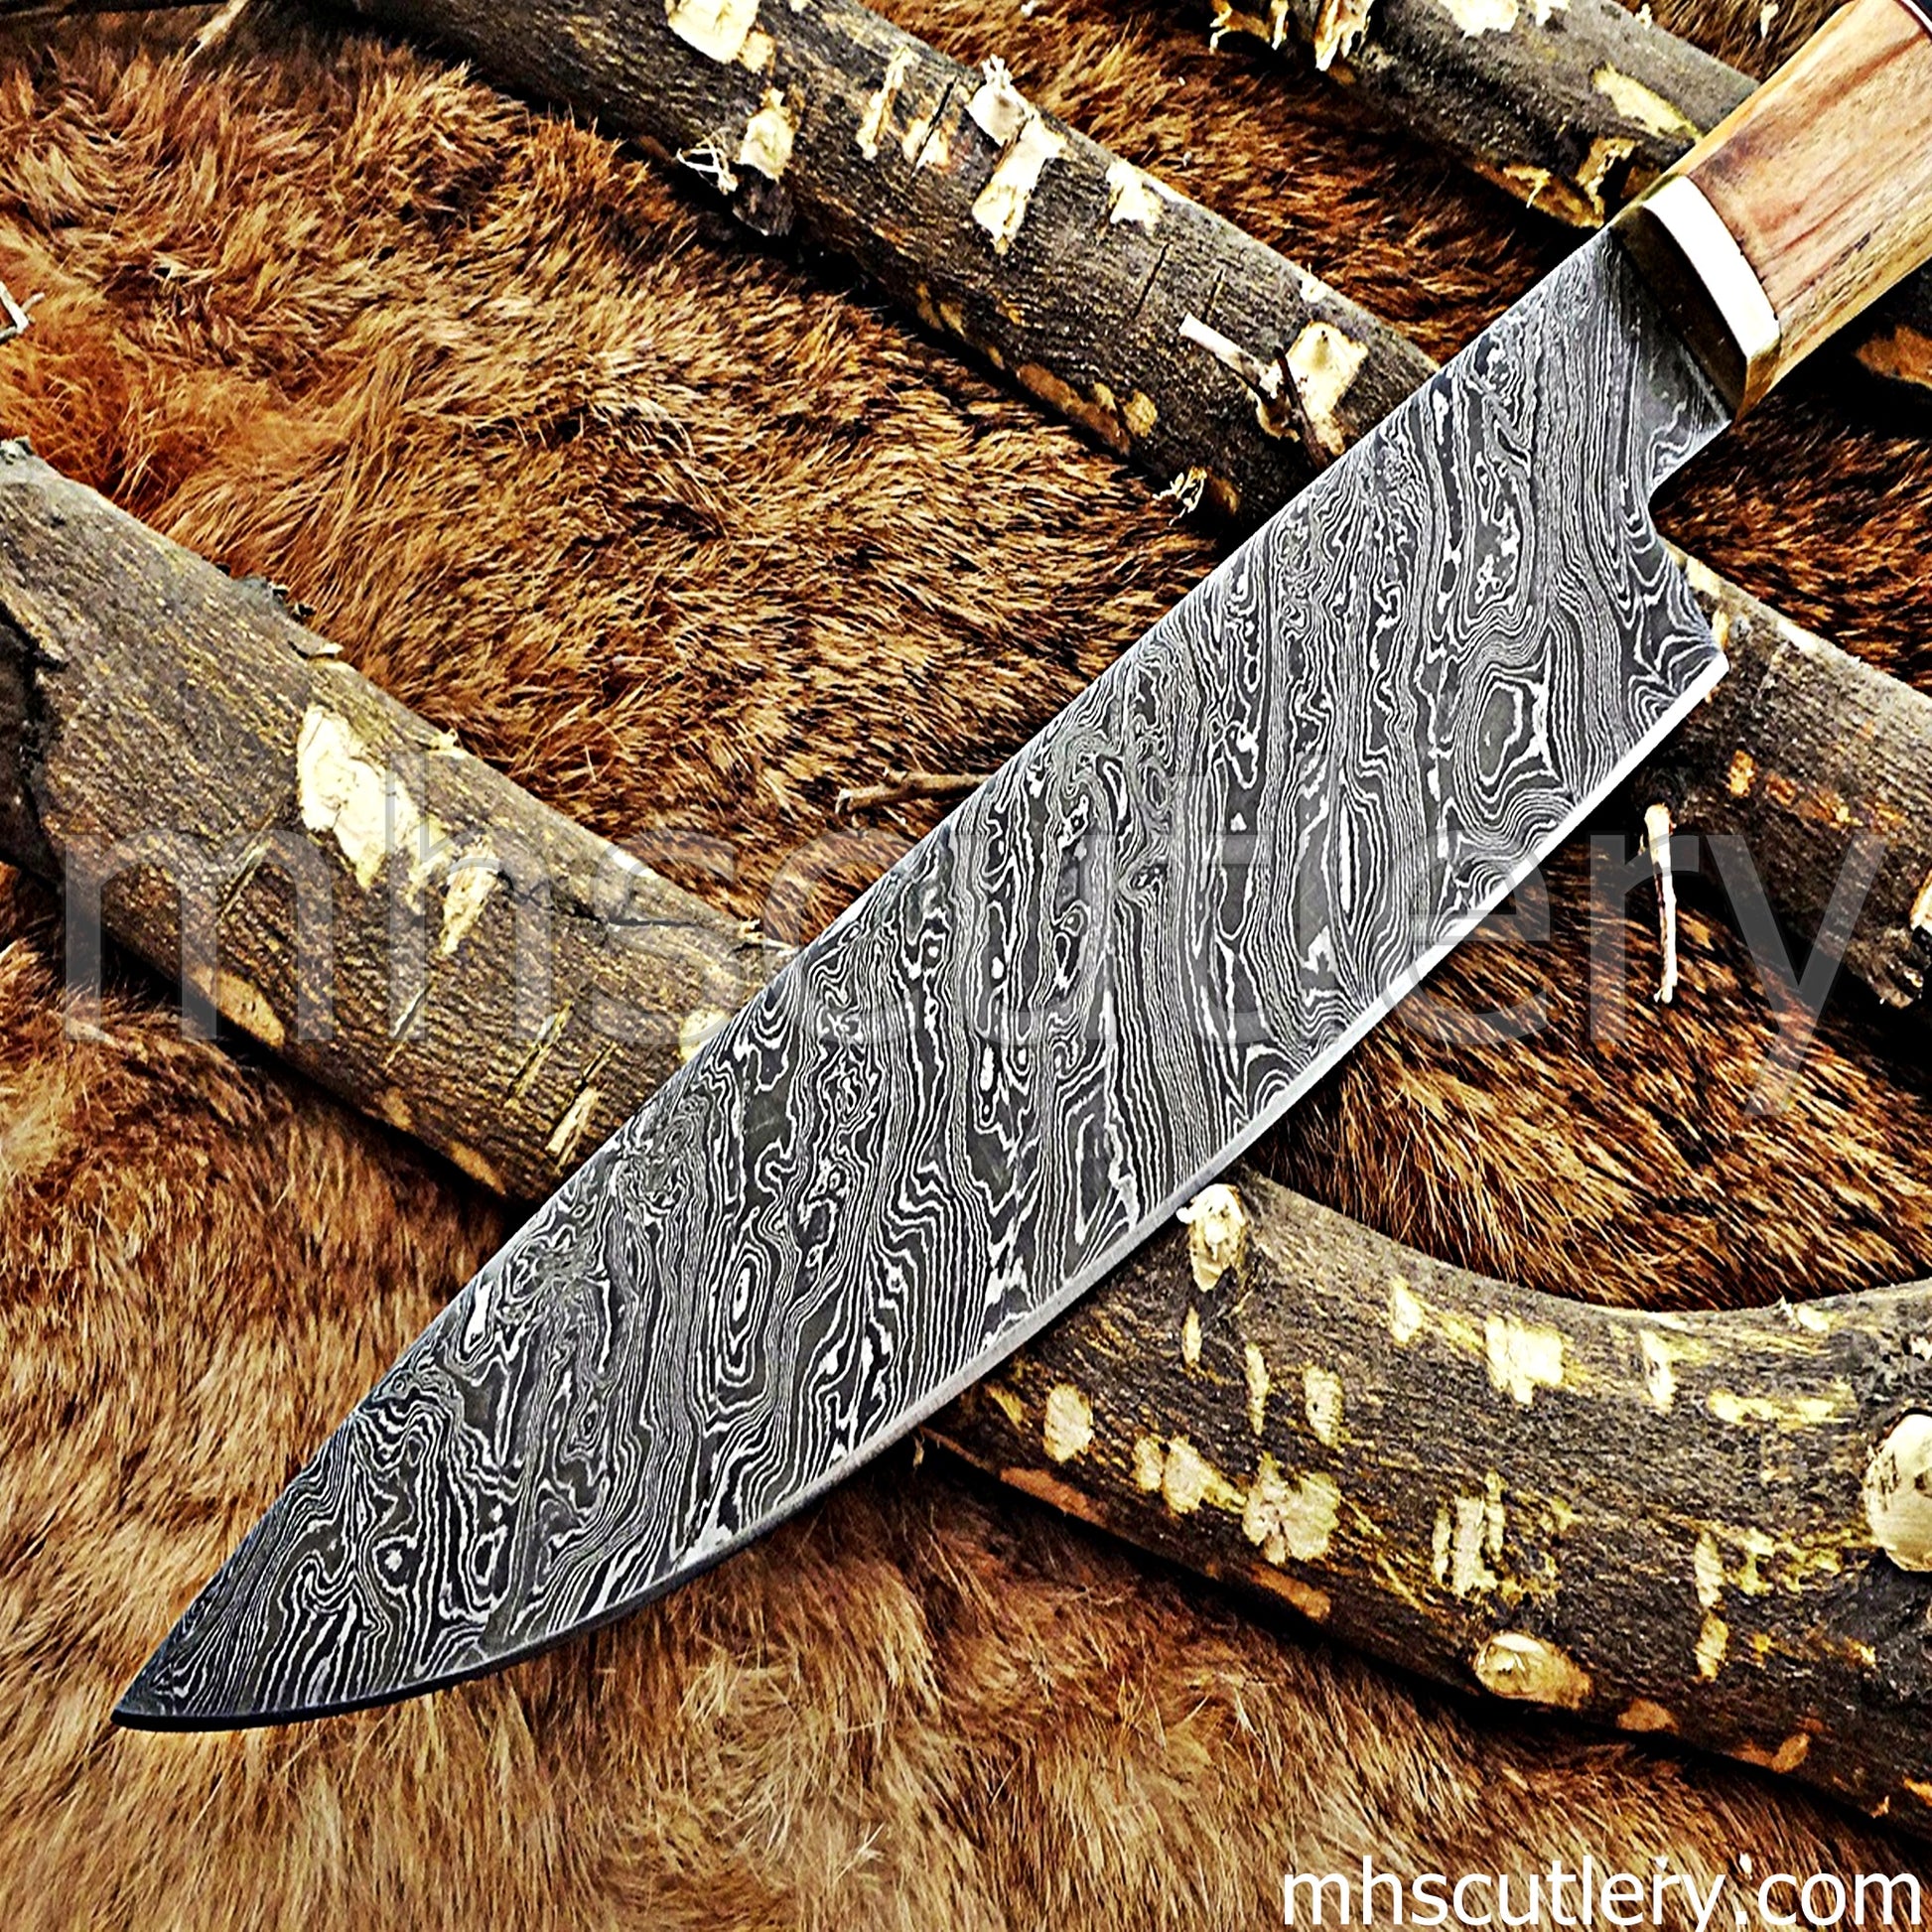 Damascus Steel Japanese Kitchen Knife | mhscutlery